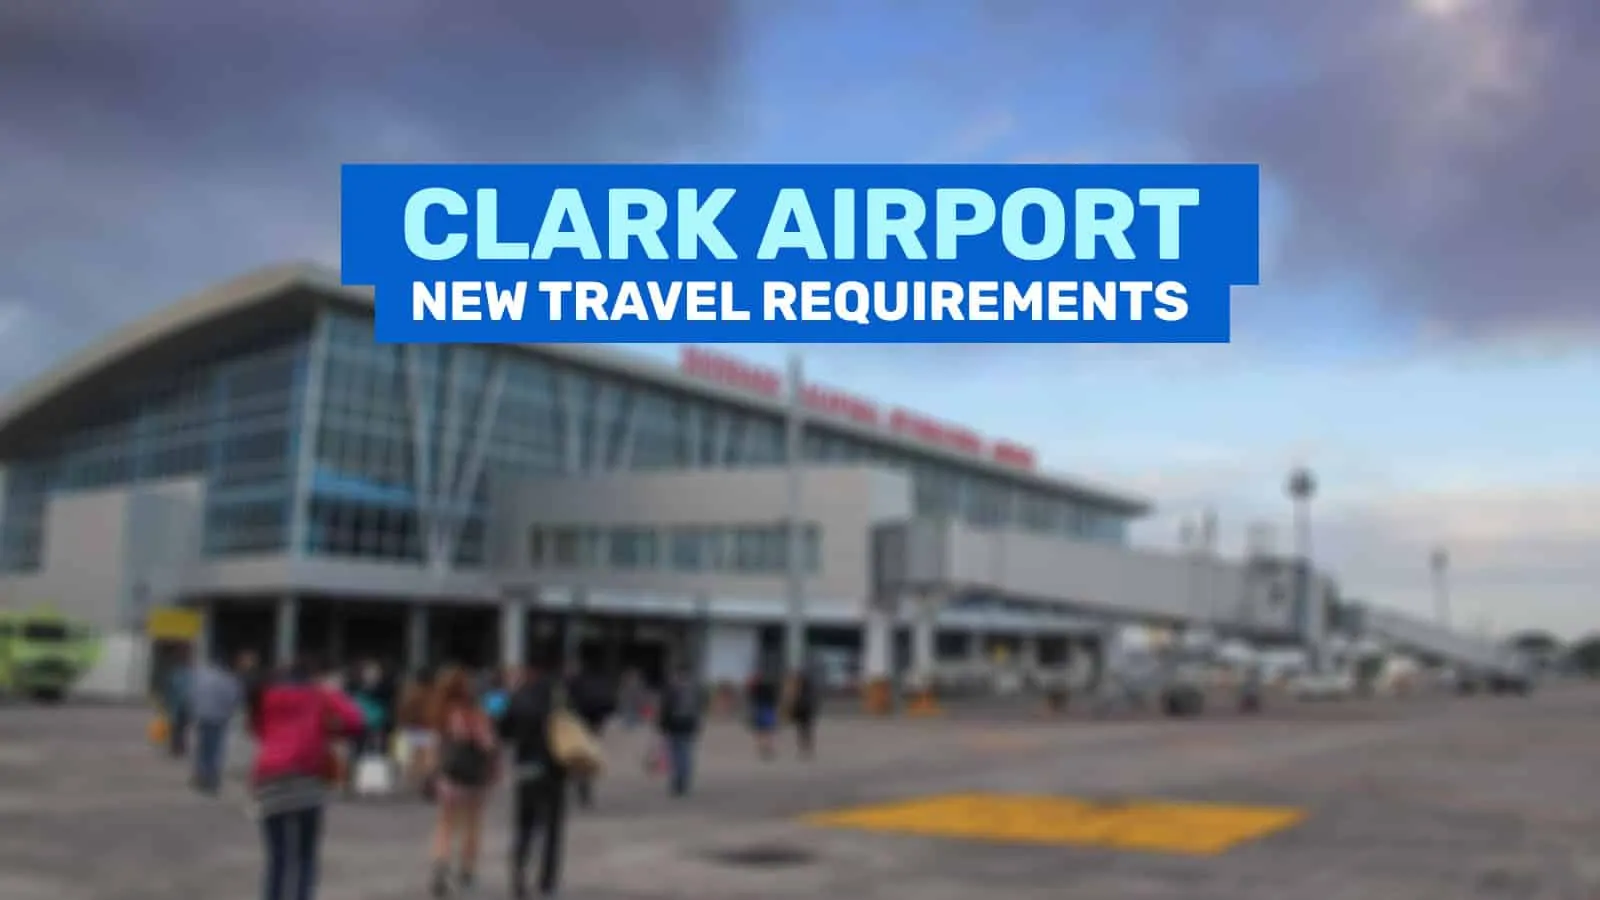 克拉克机场:抵达亚航乘客的旅行要求和指南